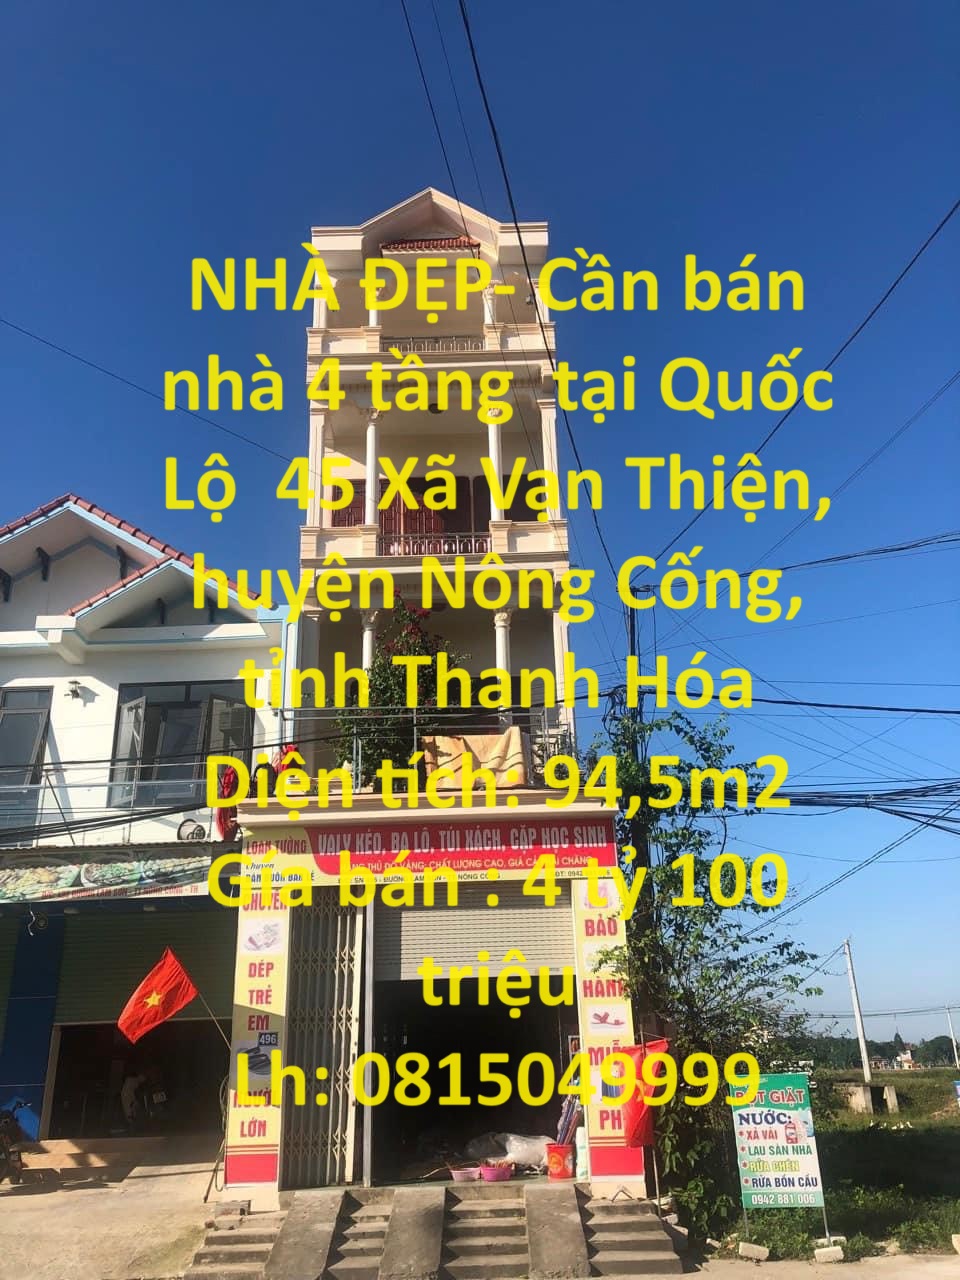 NHÀ ĐẸP- Cần bán nhà 4 tầng  tại Quốc Lộ  45 Xã Vạn Thiện, huyện Nông Cống, tỉnh Thanh Hóa - Ảnh chính